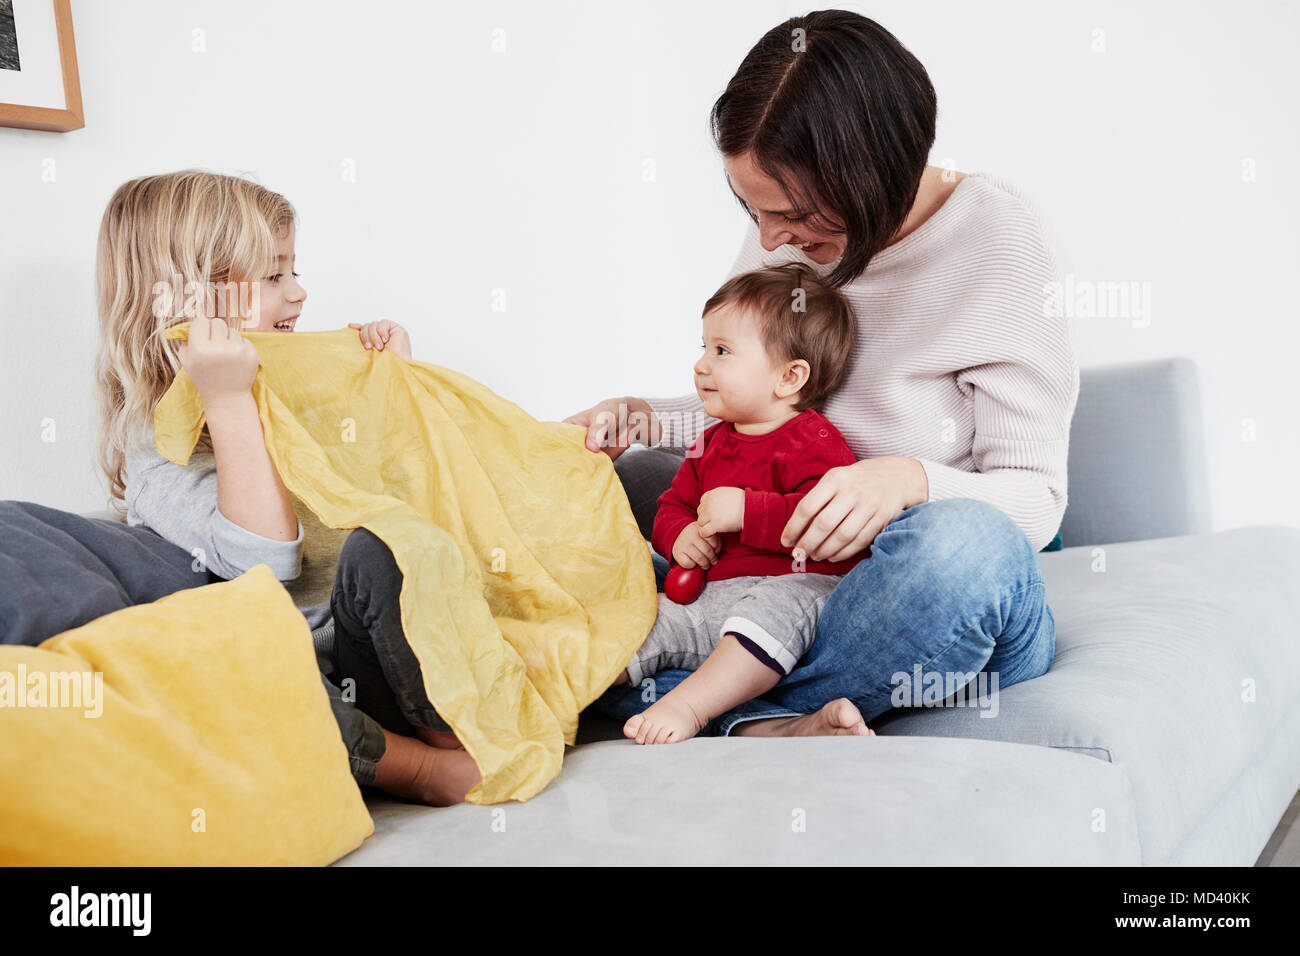 Family sitting on sofa, jeune fille jouant à cache-cache avec bébé soeur Banque D'Images